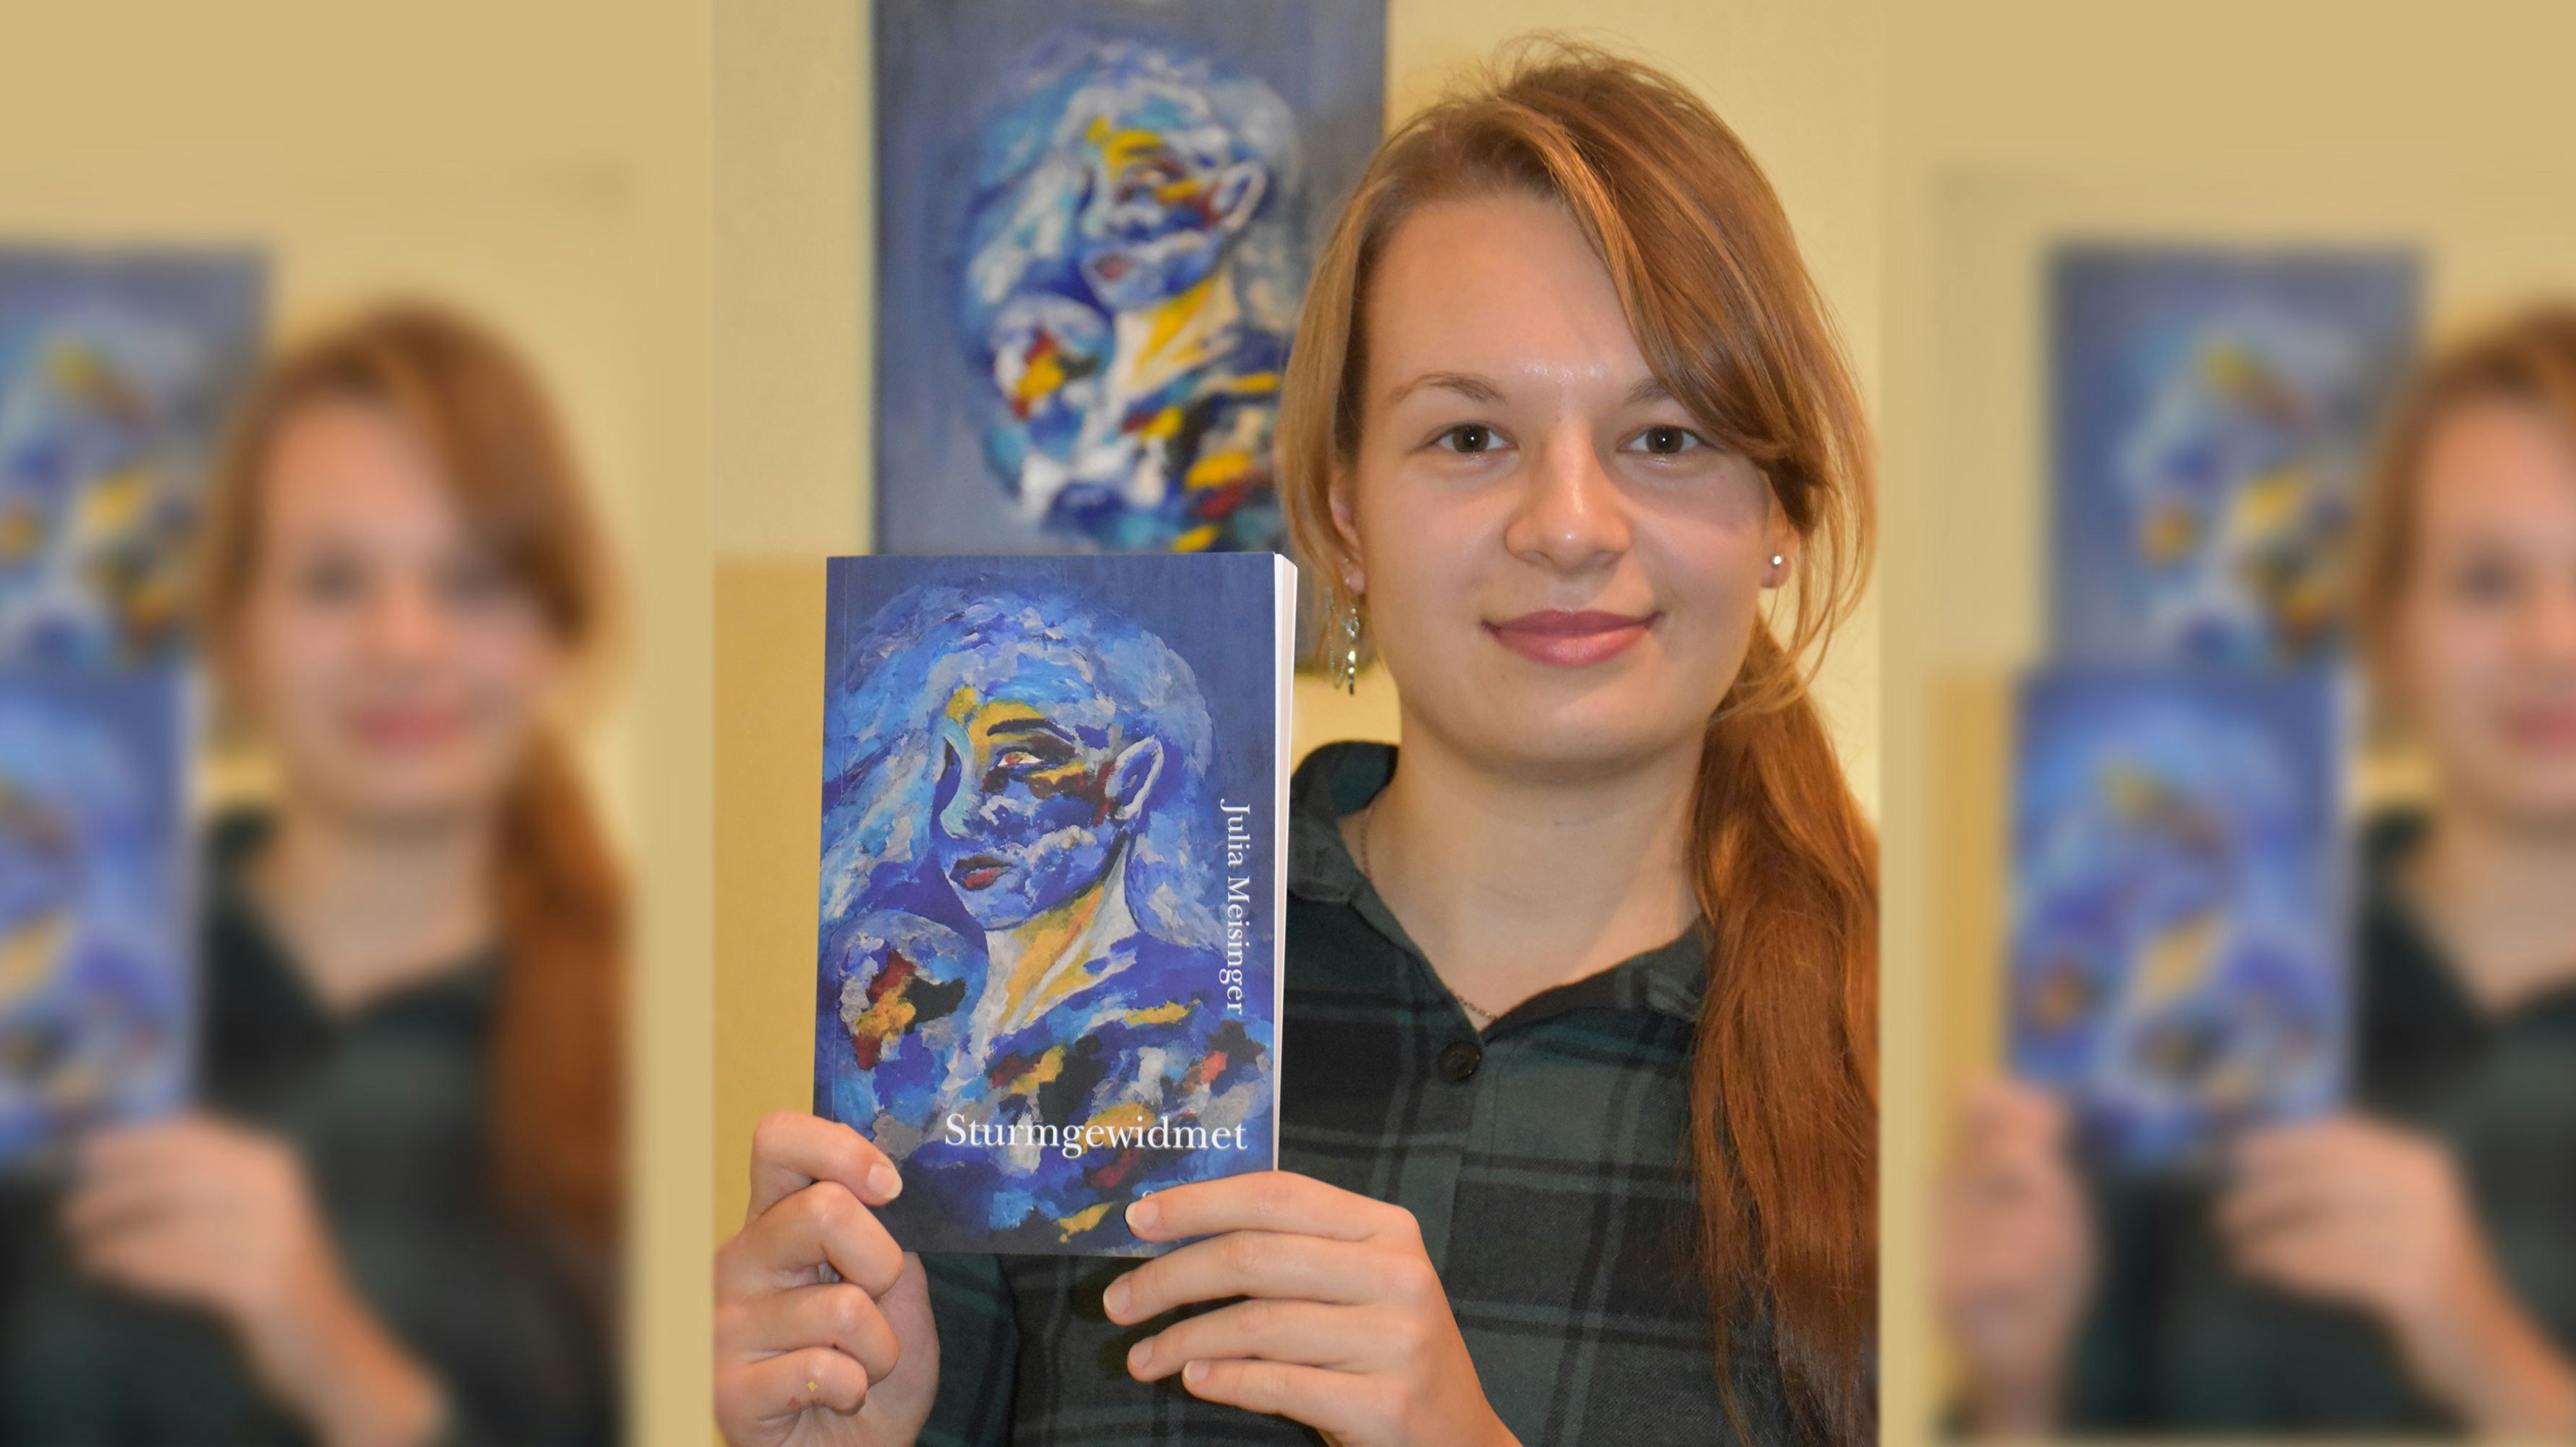 Buchpremiere: Die 19-jährige Schülerin Julia Meisinger aus Hausstette hat vor 2 Wochen ihren ersten Kurzprosa-Band „Sturmgewidmet“ veröffentlicht. Fotomontage: M. Meyer/von Hammerstein